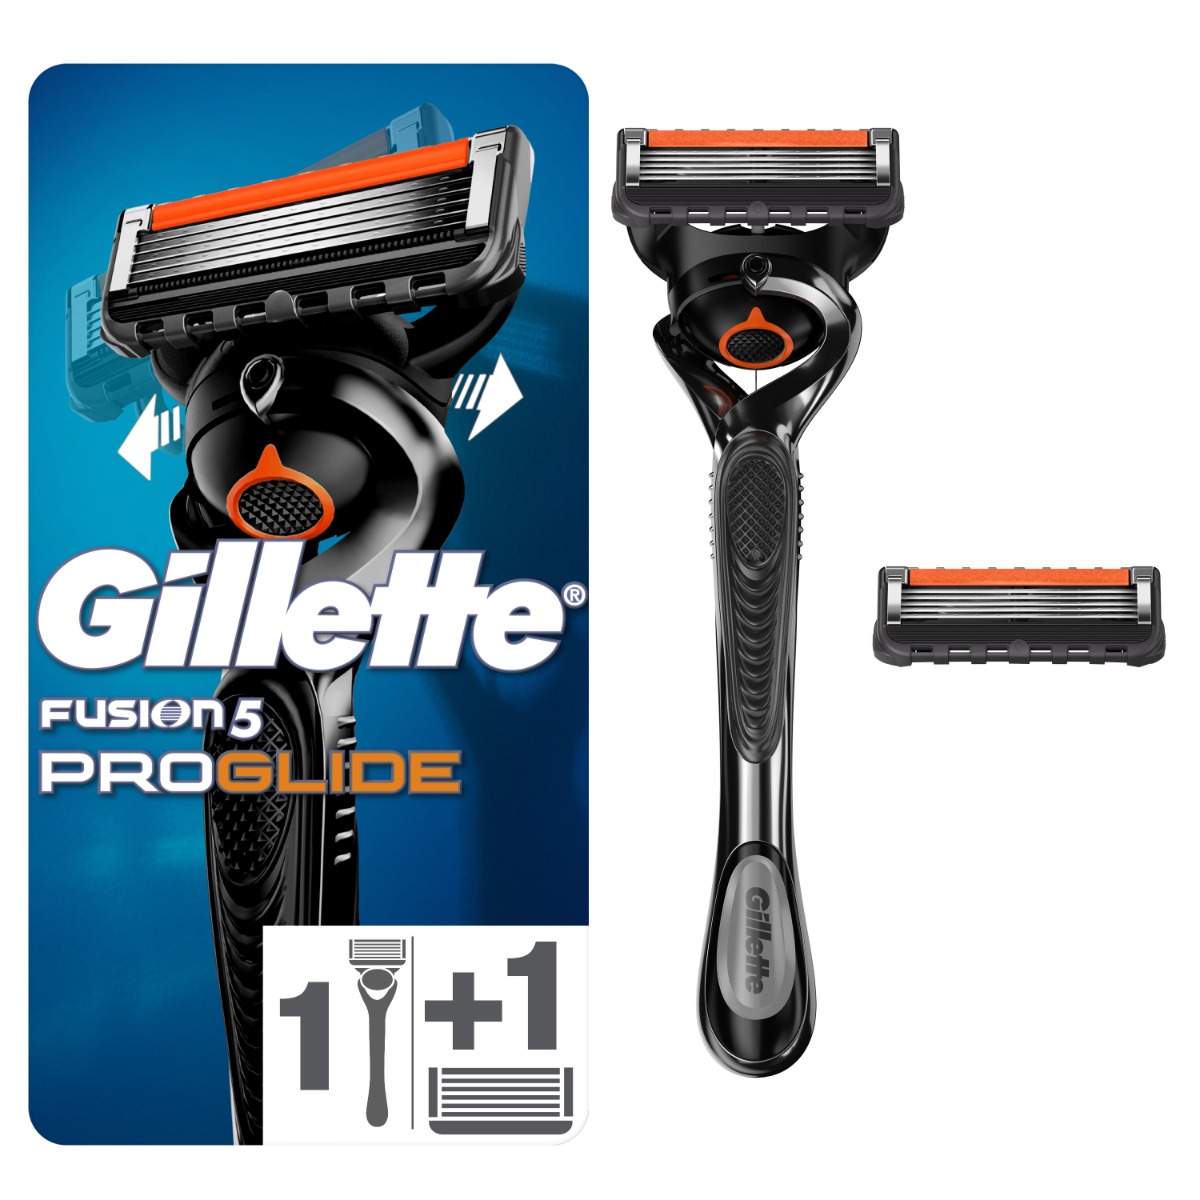 Gillette Fusion5 ProGlide Flexball pánský holicí strojek + 2 hlavice Gillette